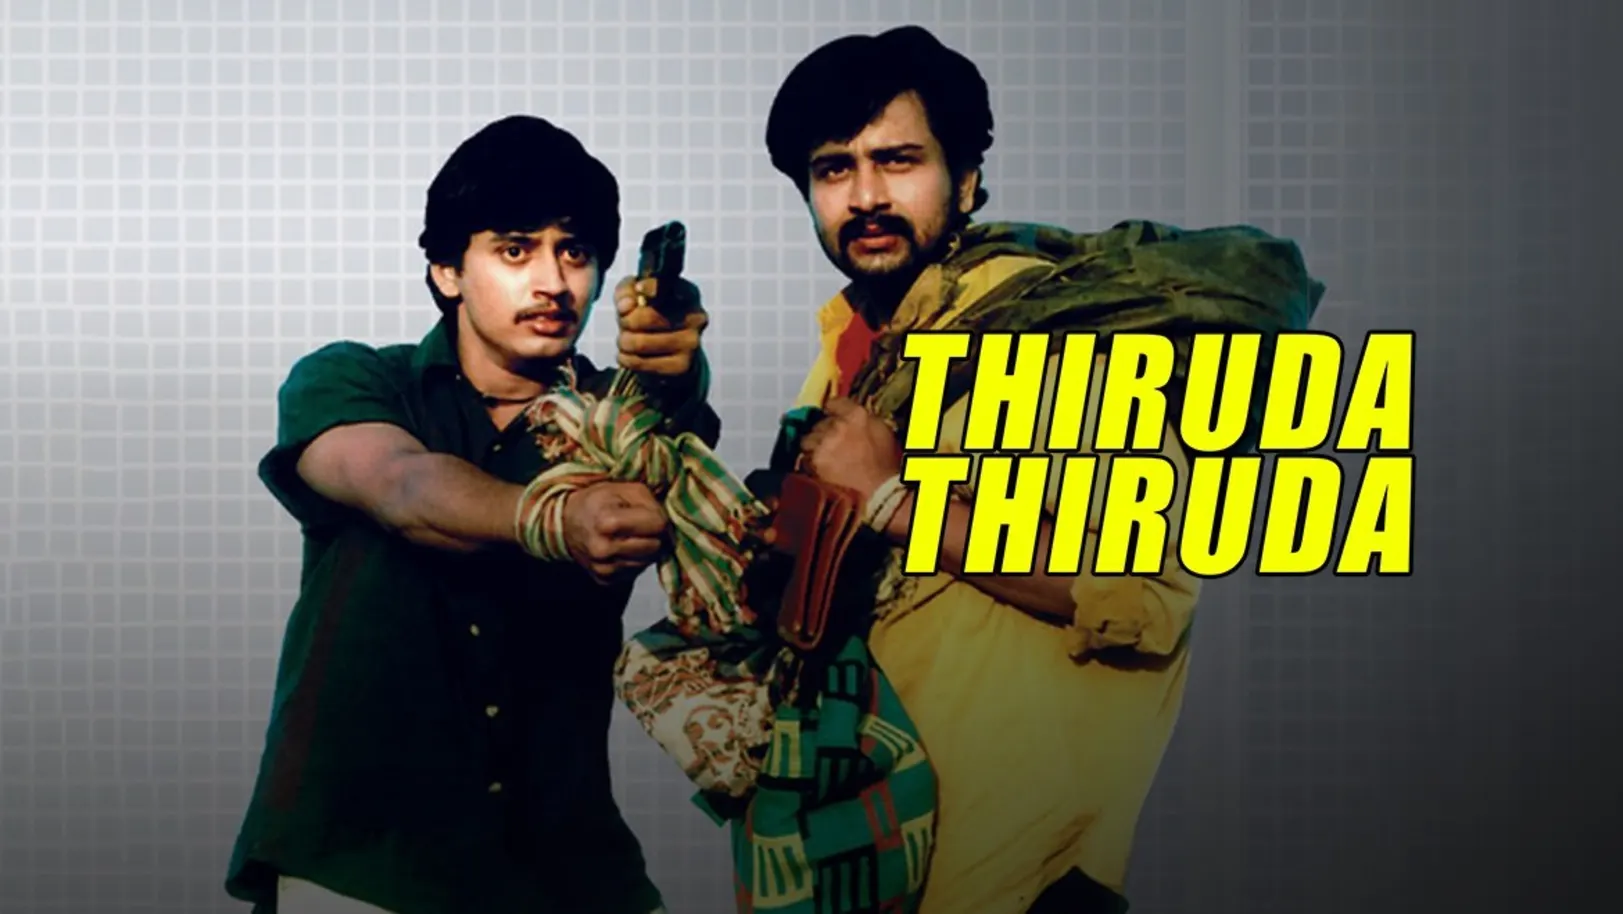 Thiruda Thiruda Movie